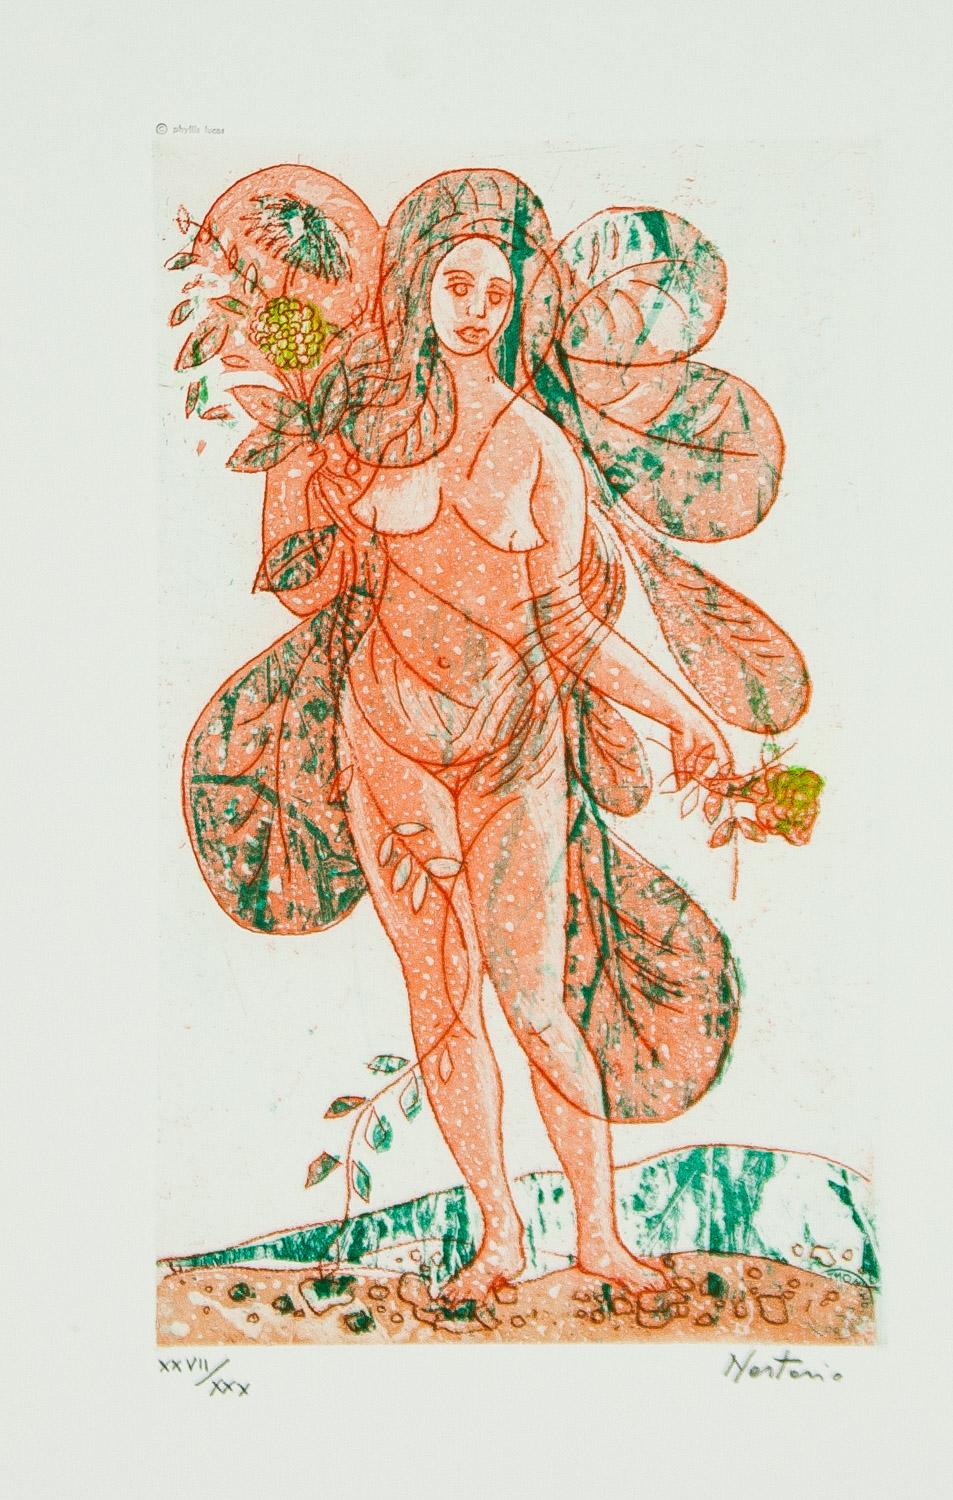    Leaves of Love-Orange Lady ist eine signierte Original-Lithografie in limitierter Auflage (XXII/ XXX) von Alessandro Nastasio, die einen orangefarbenen Akt zeigt, der Blumen in jeder Hand hält und mit den nackten Füßen auf dem Boden steht. Sie